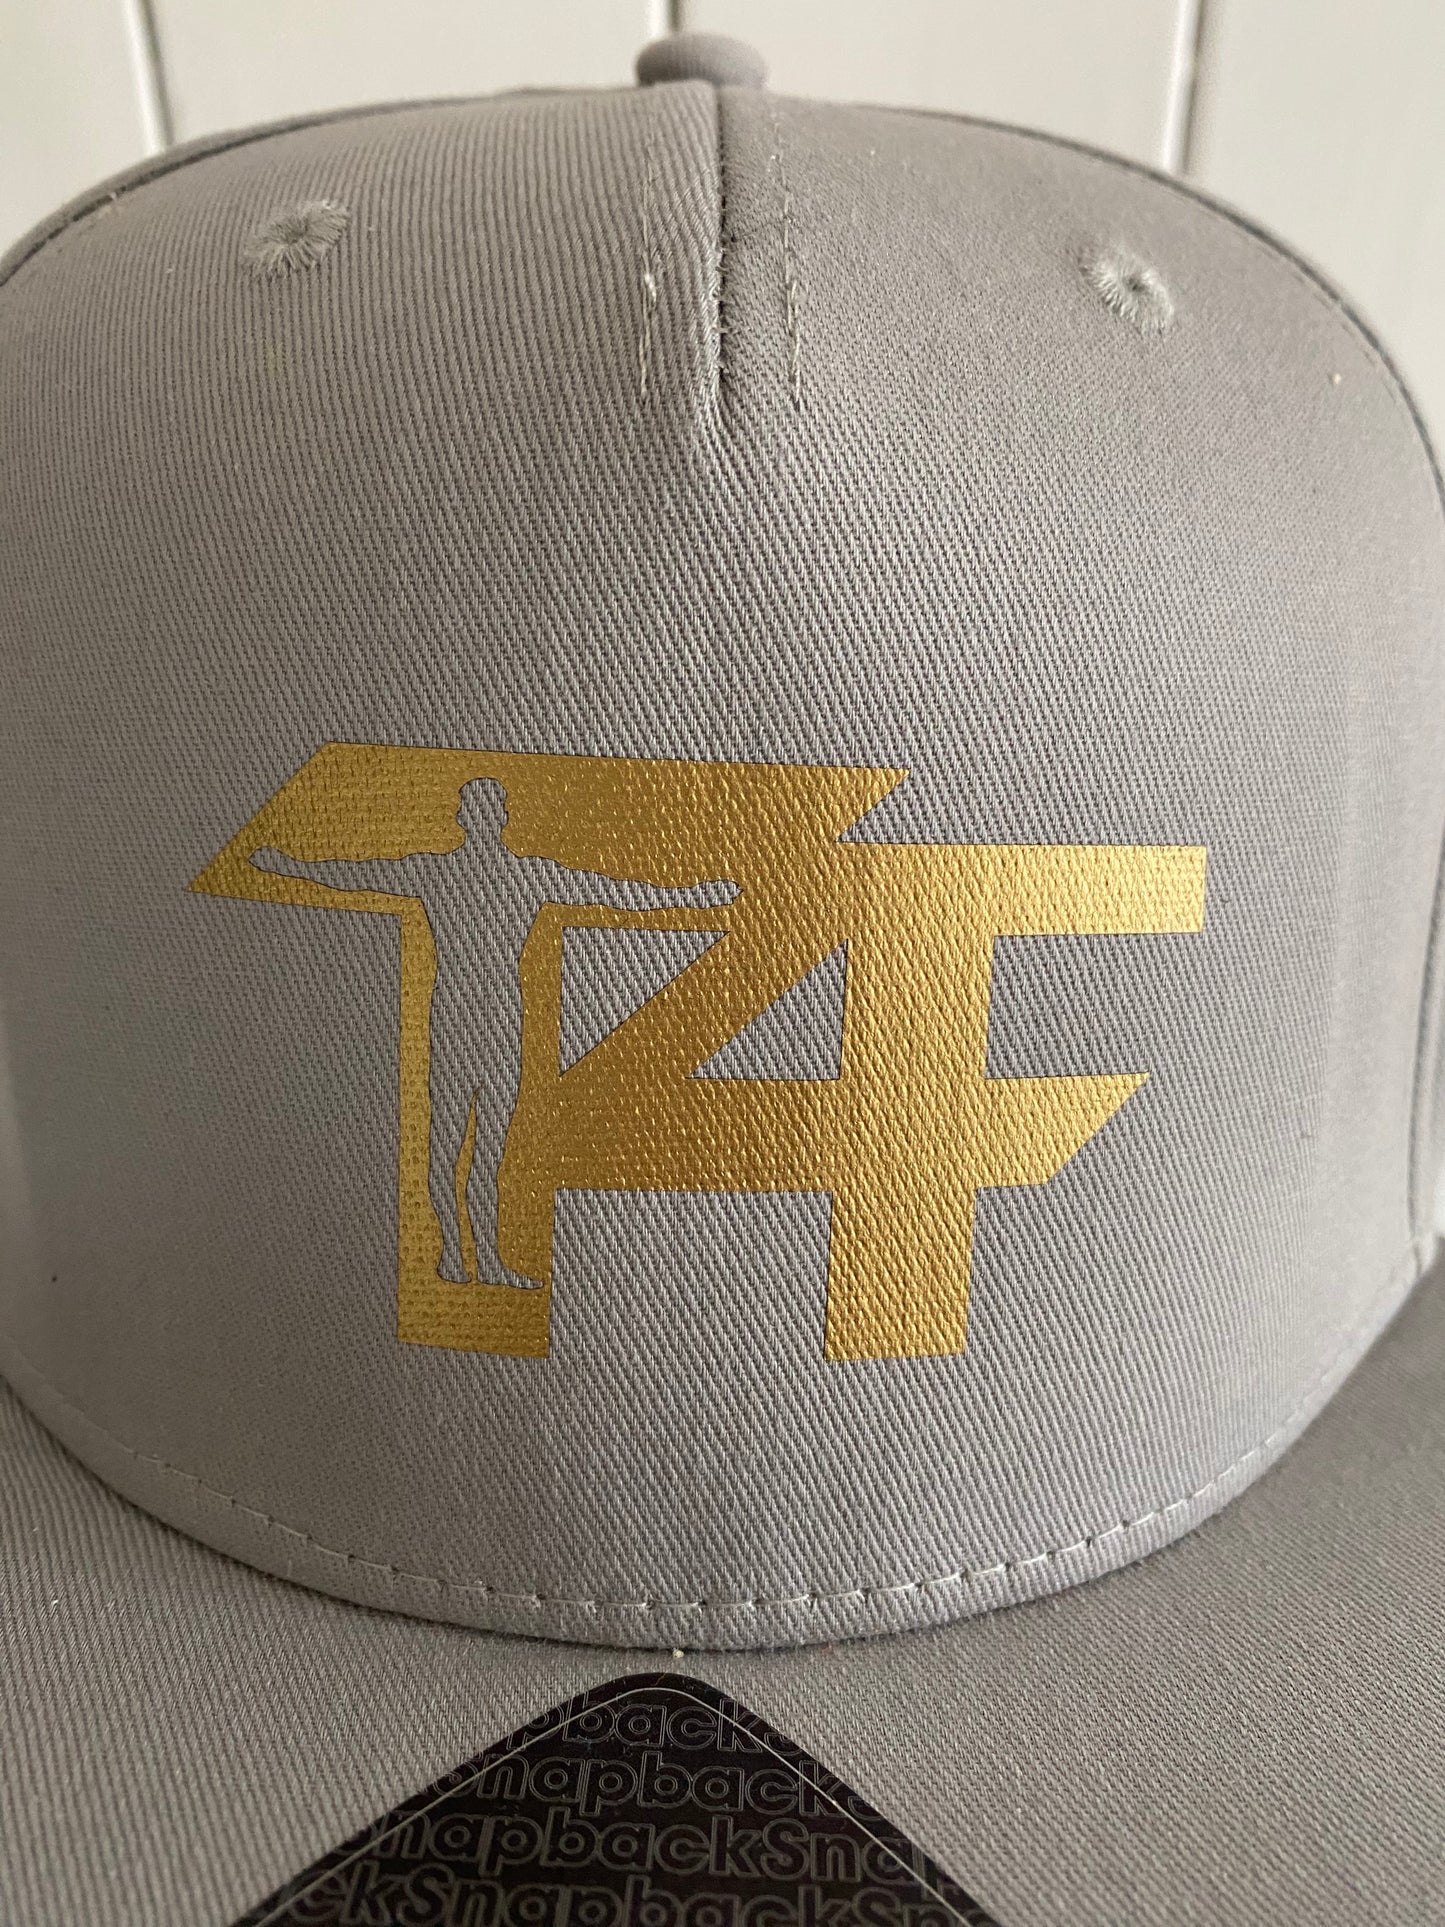 T4F Baseball Cap SnapBack